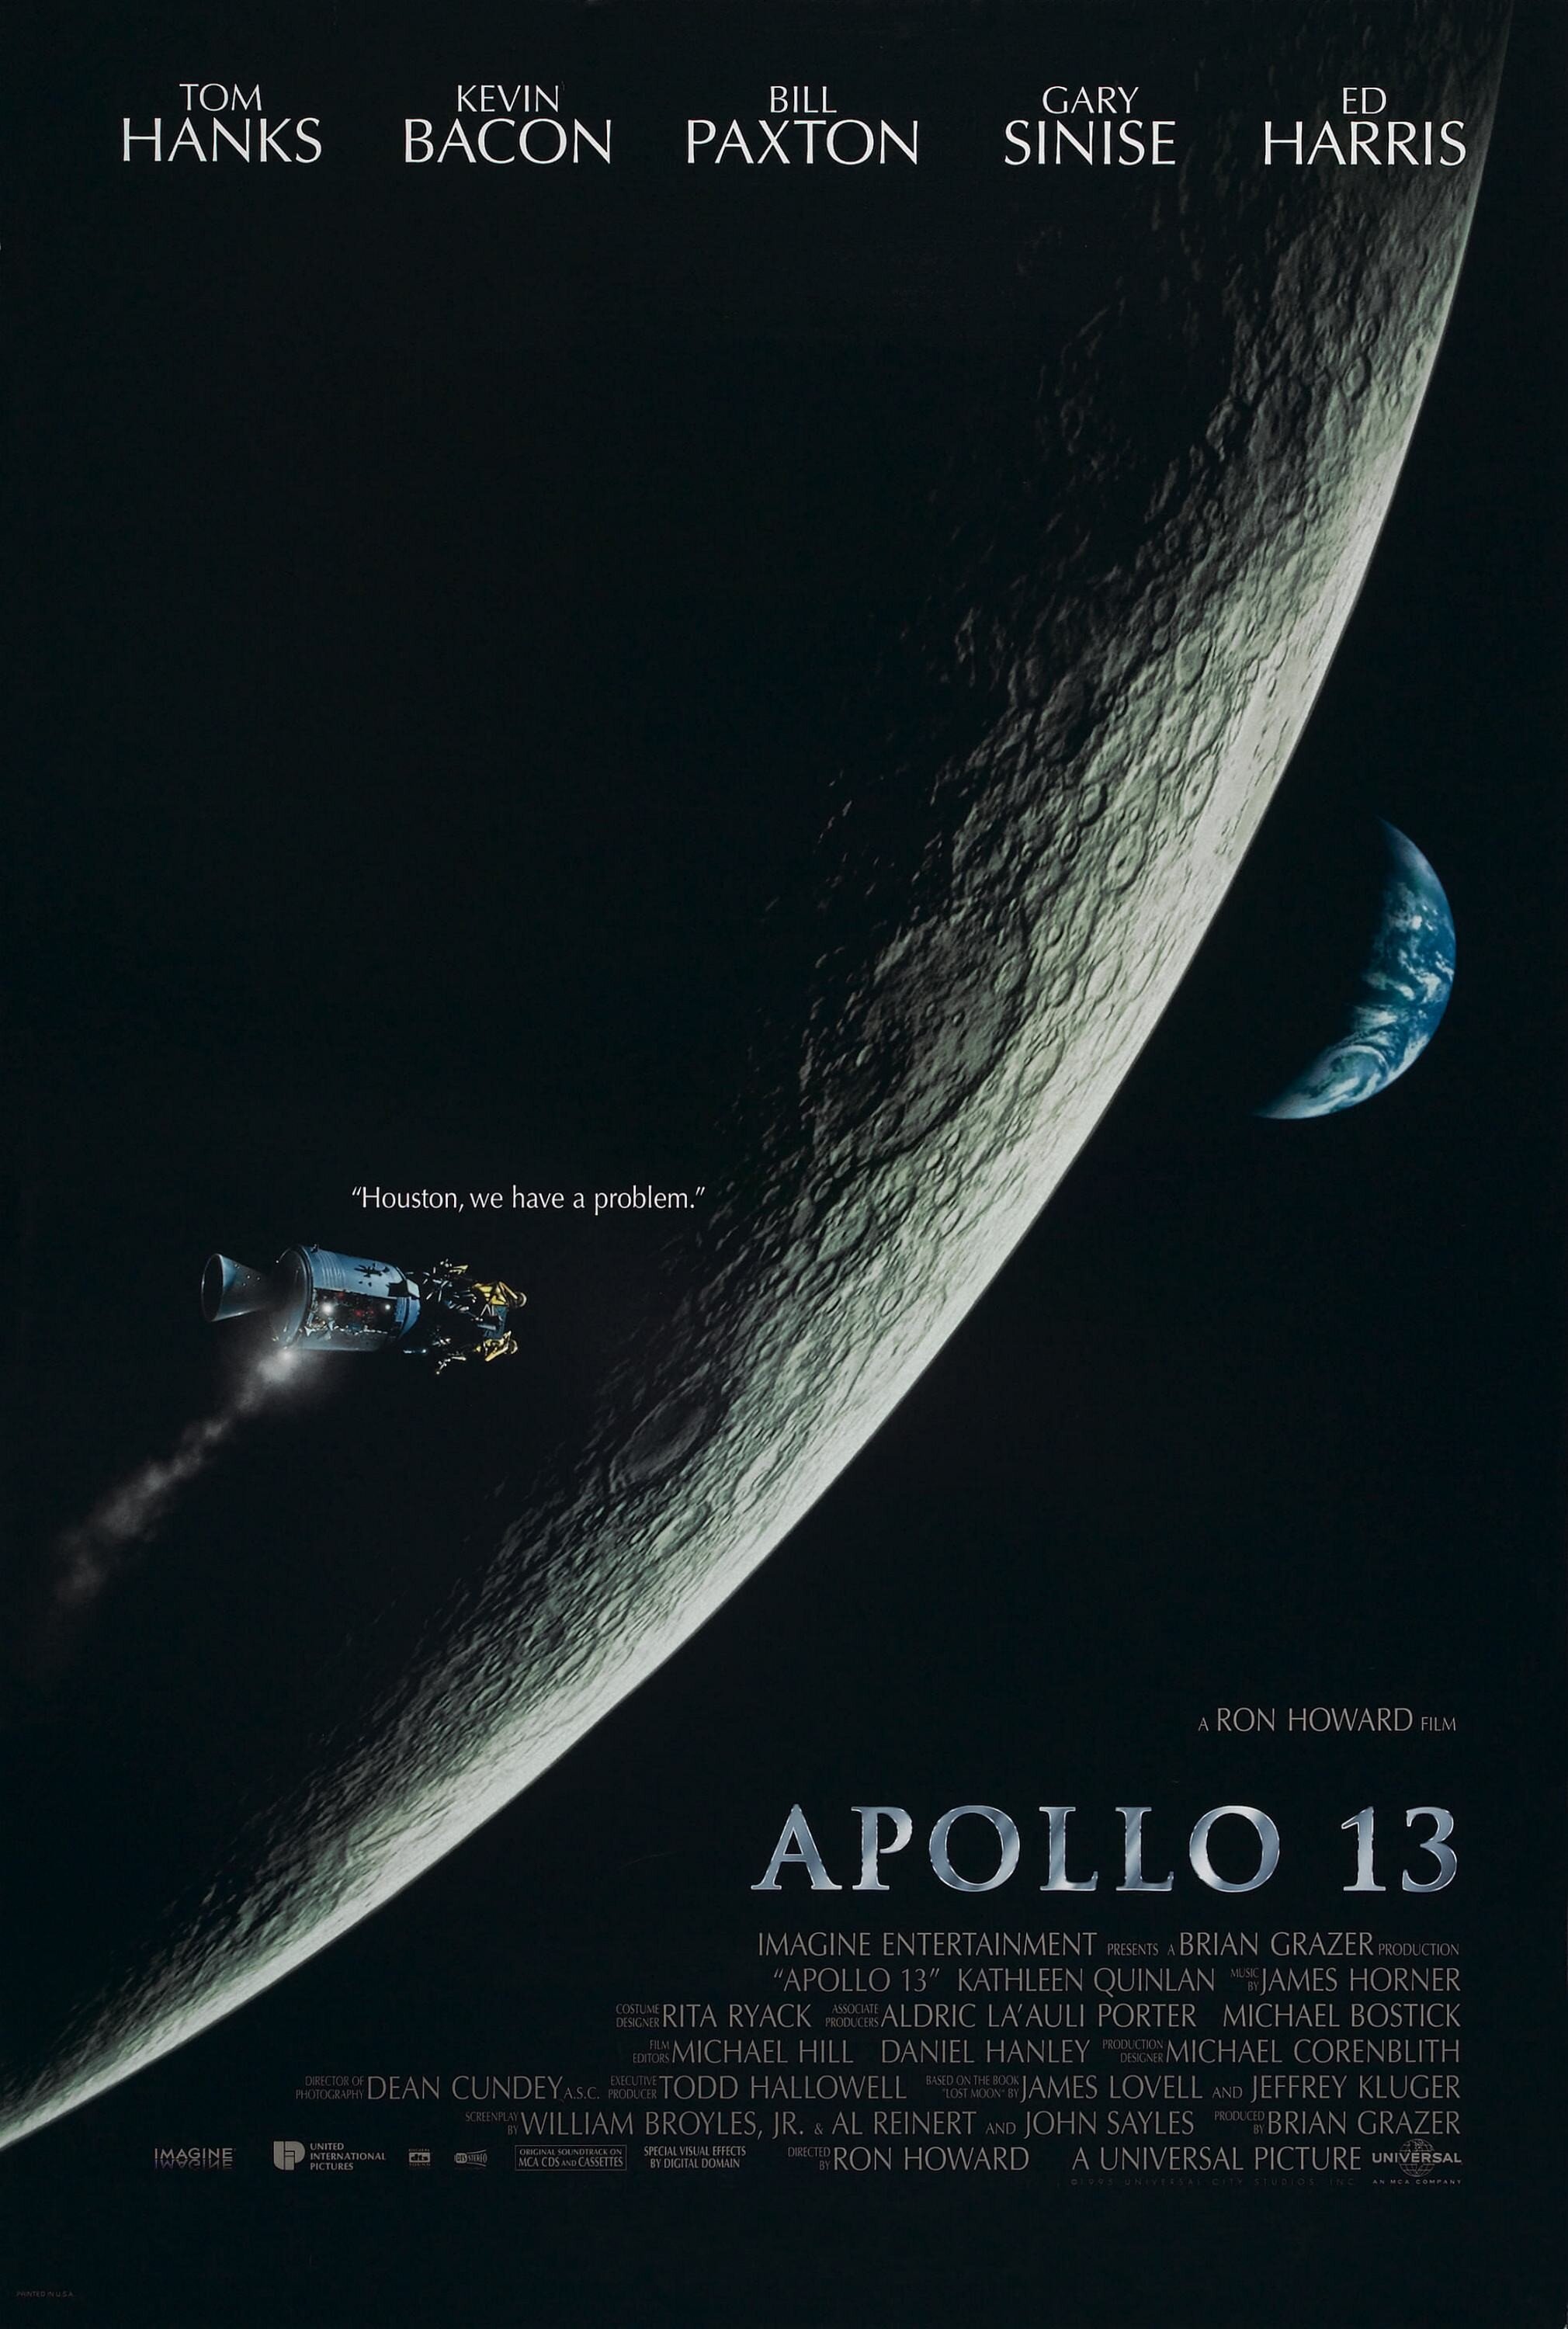 Apollo 13 Movie Poster.jpg